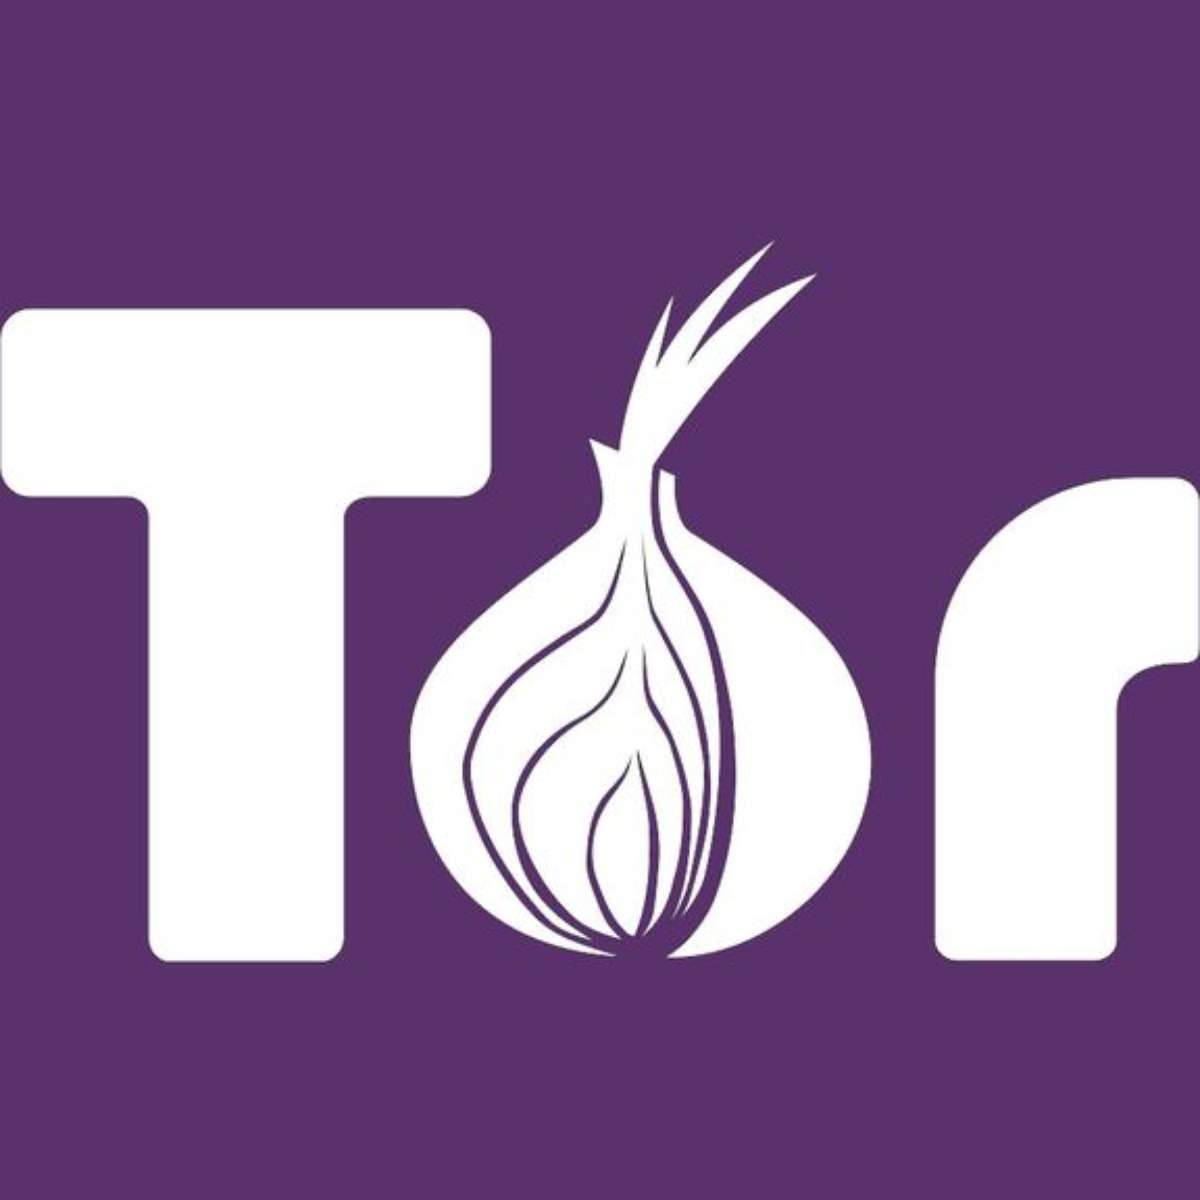 O que é o Tor? Um guia para a rede Tor e para o uso do navegador Tor